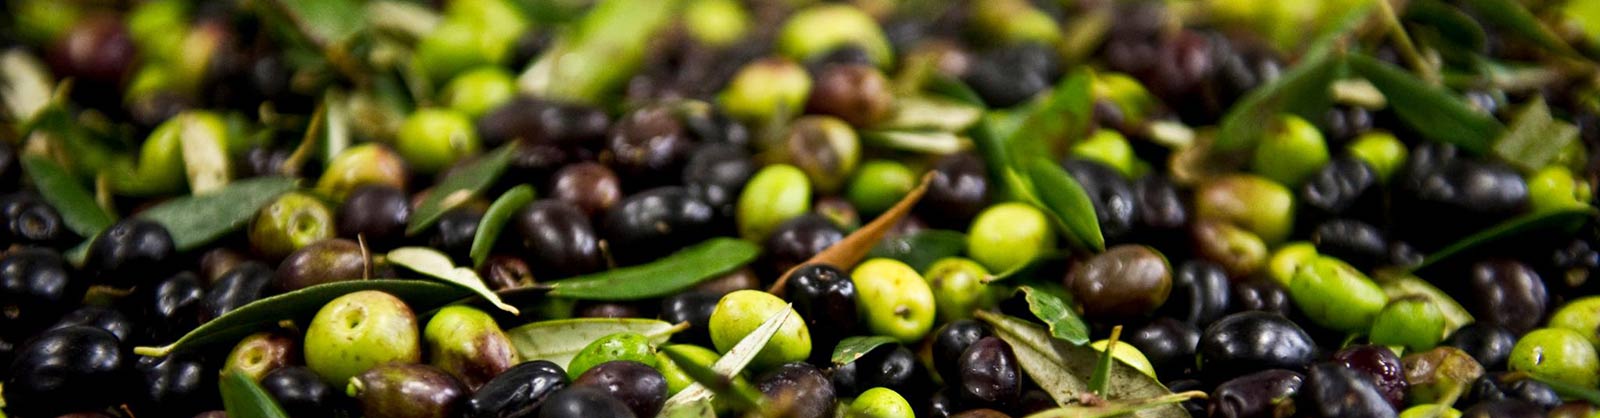 olio extra vergine di oliva sicilia biologico